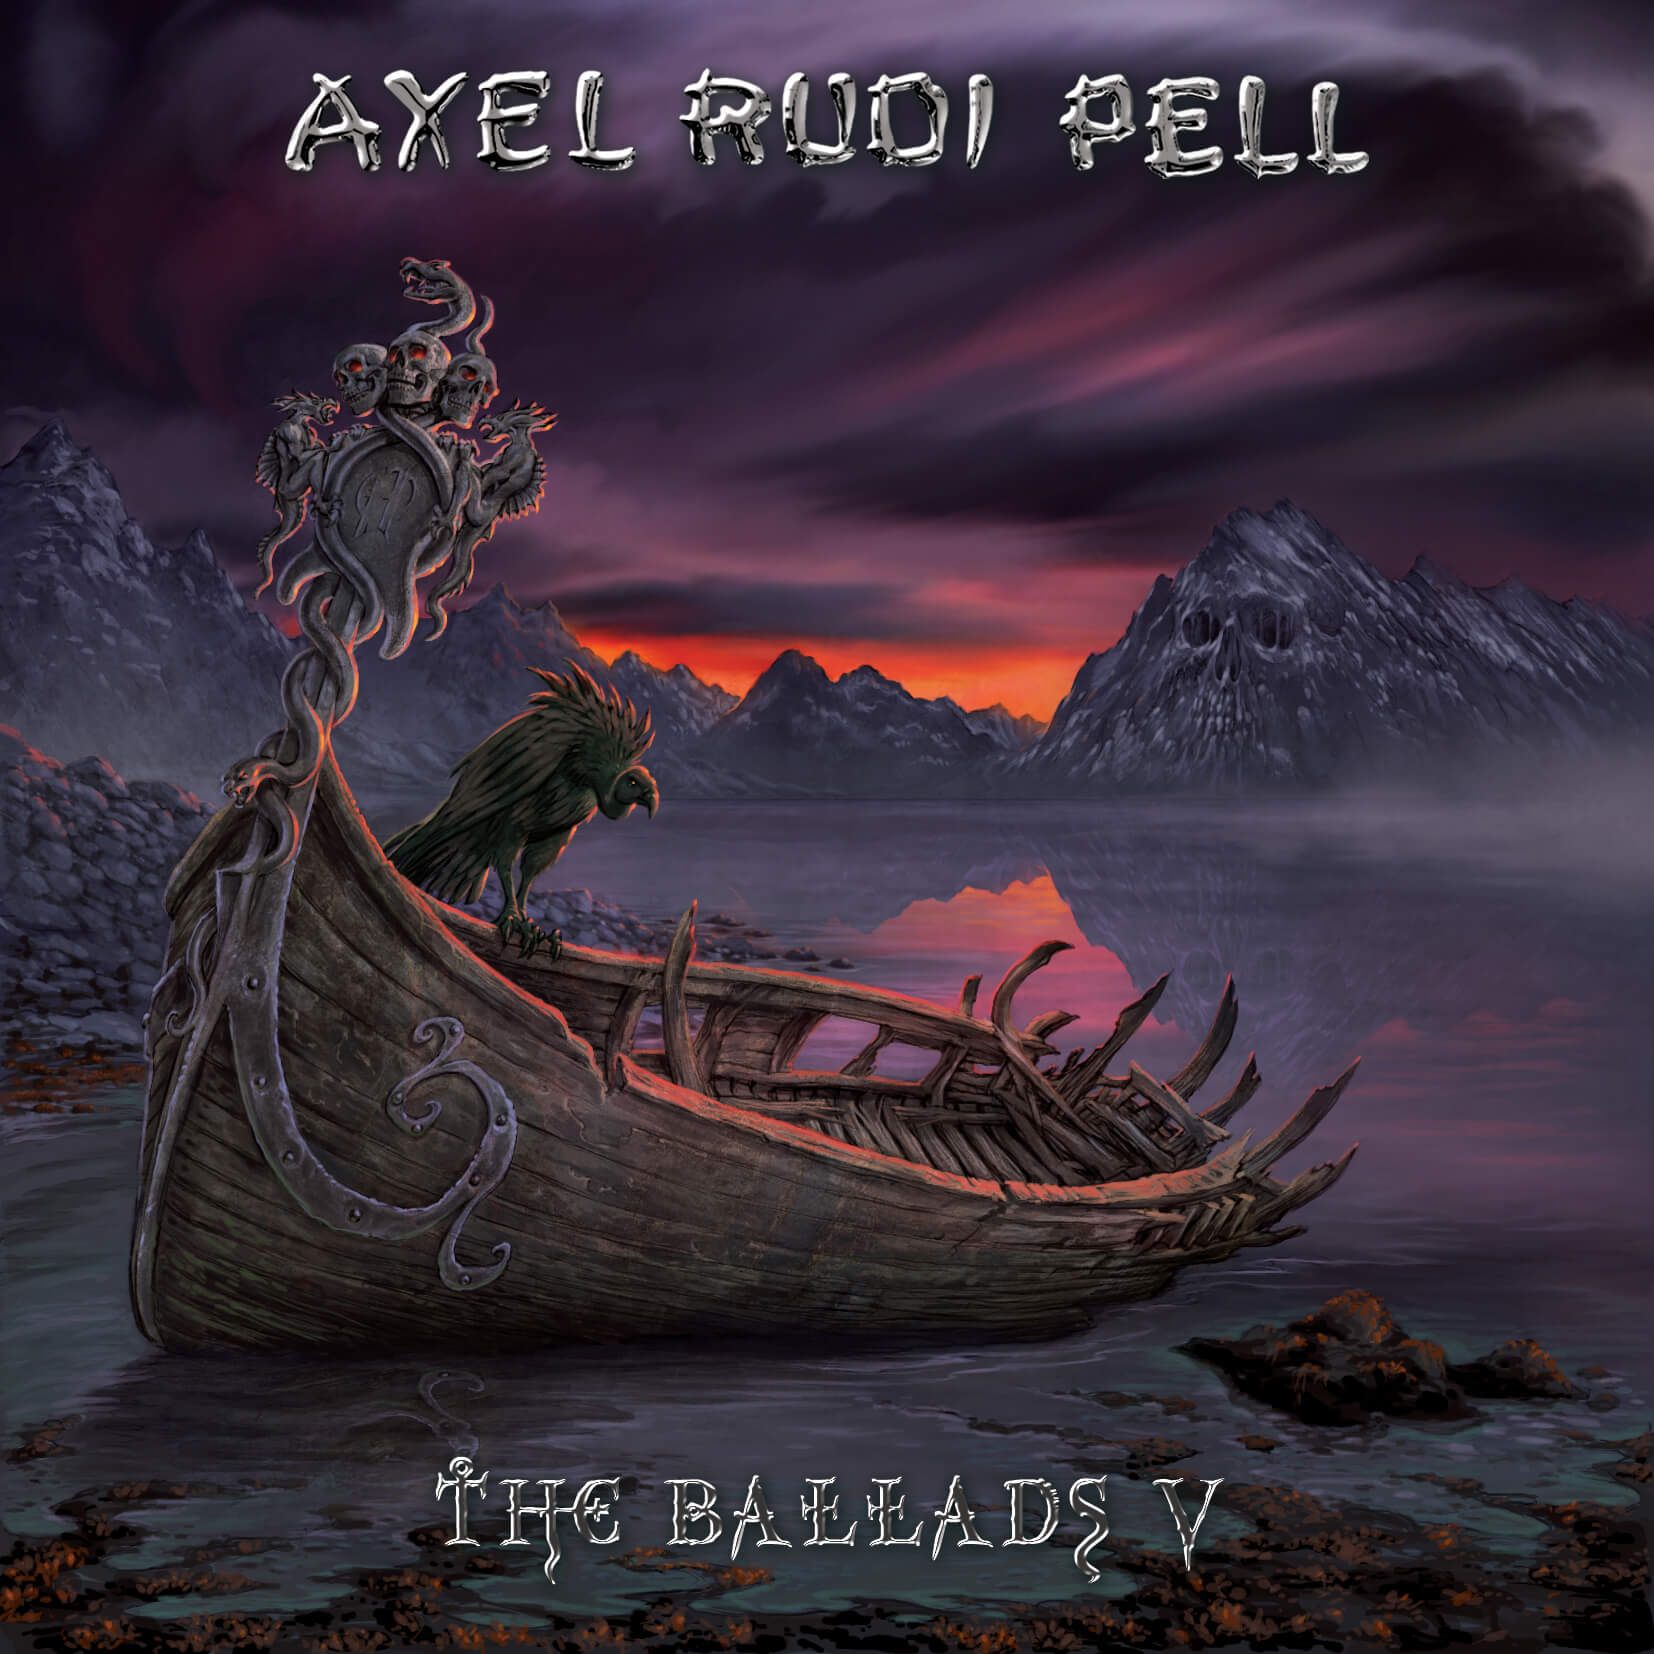 AXEL RUDI PELL – Neues Balladen Album „The Ballads V“ am 21. April 21 2017